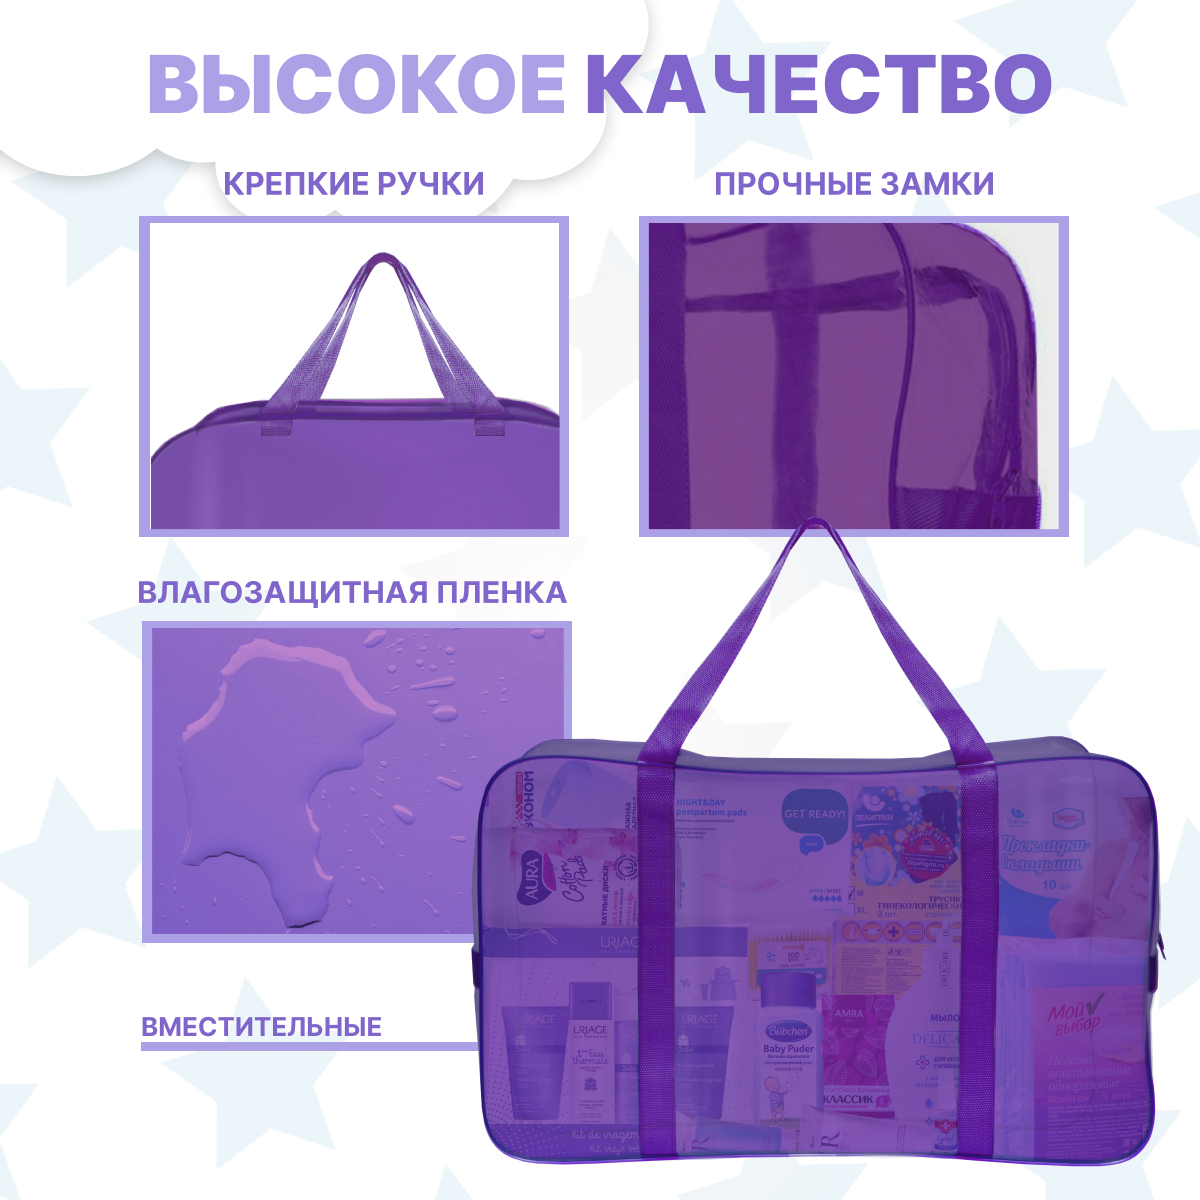 Набор для роддома ForBaby прозрачные сумки 3 шт - фиолетовый цвет - фото 4